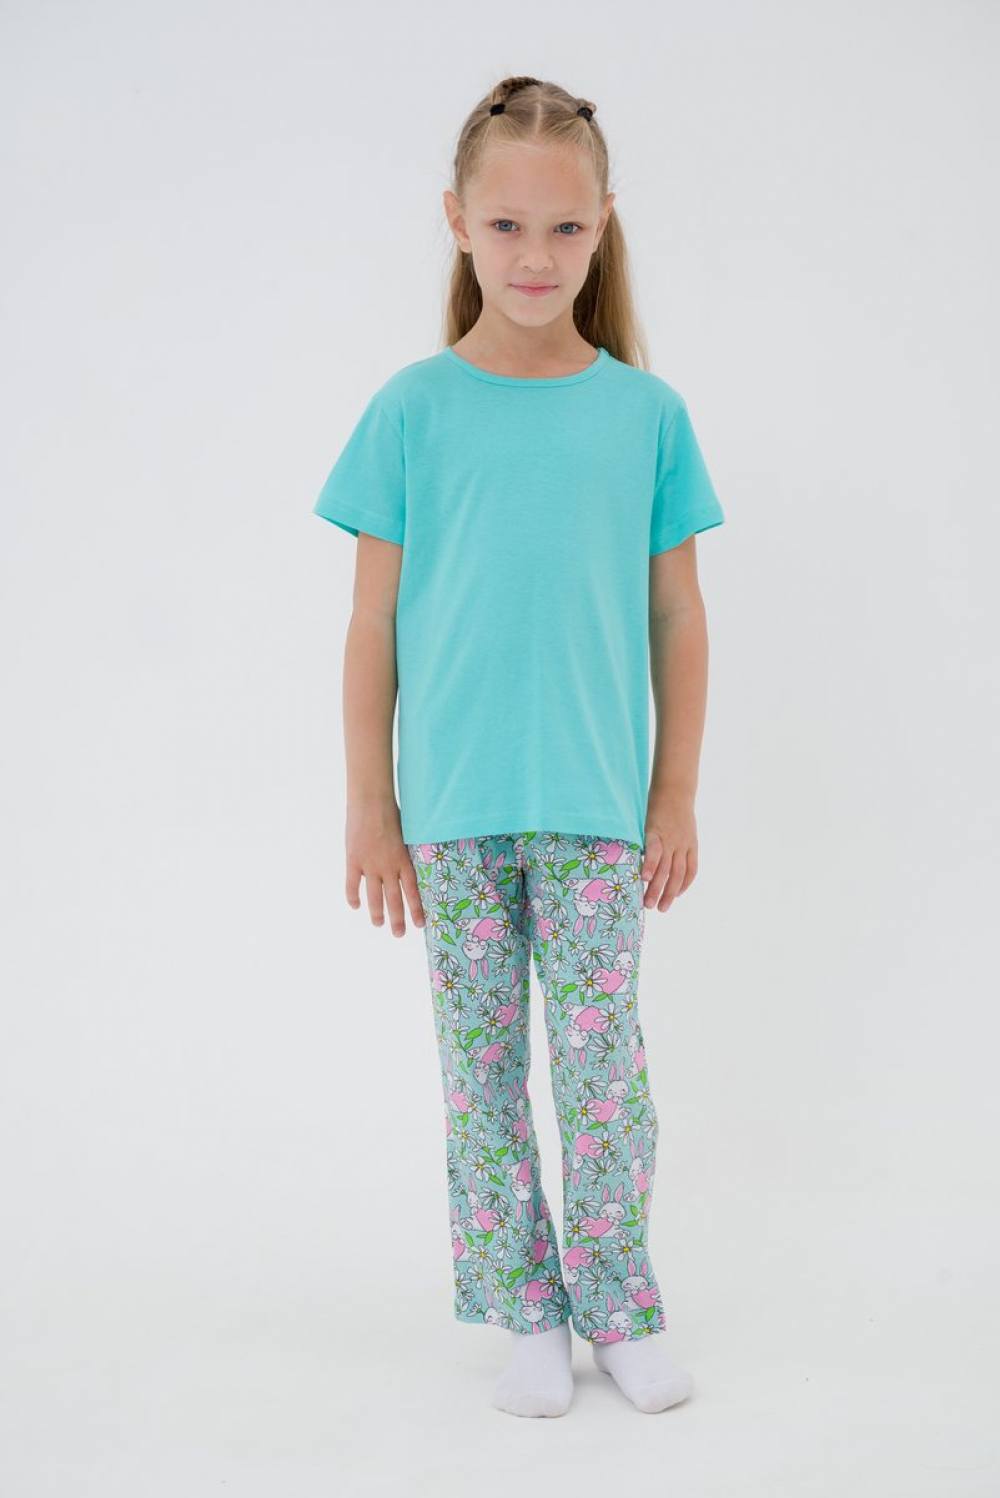 Пижама для девочки. Артикул 000002769